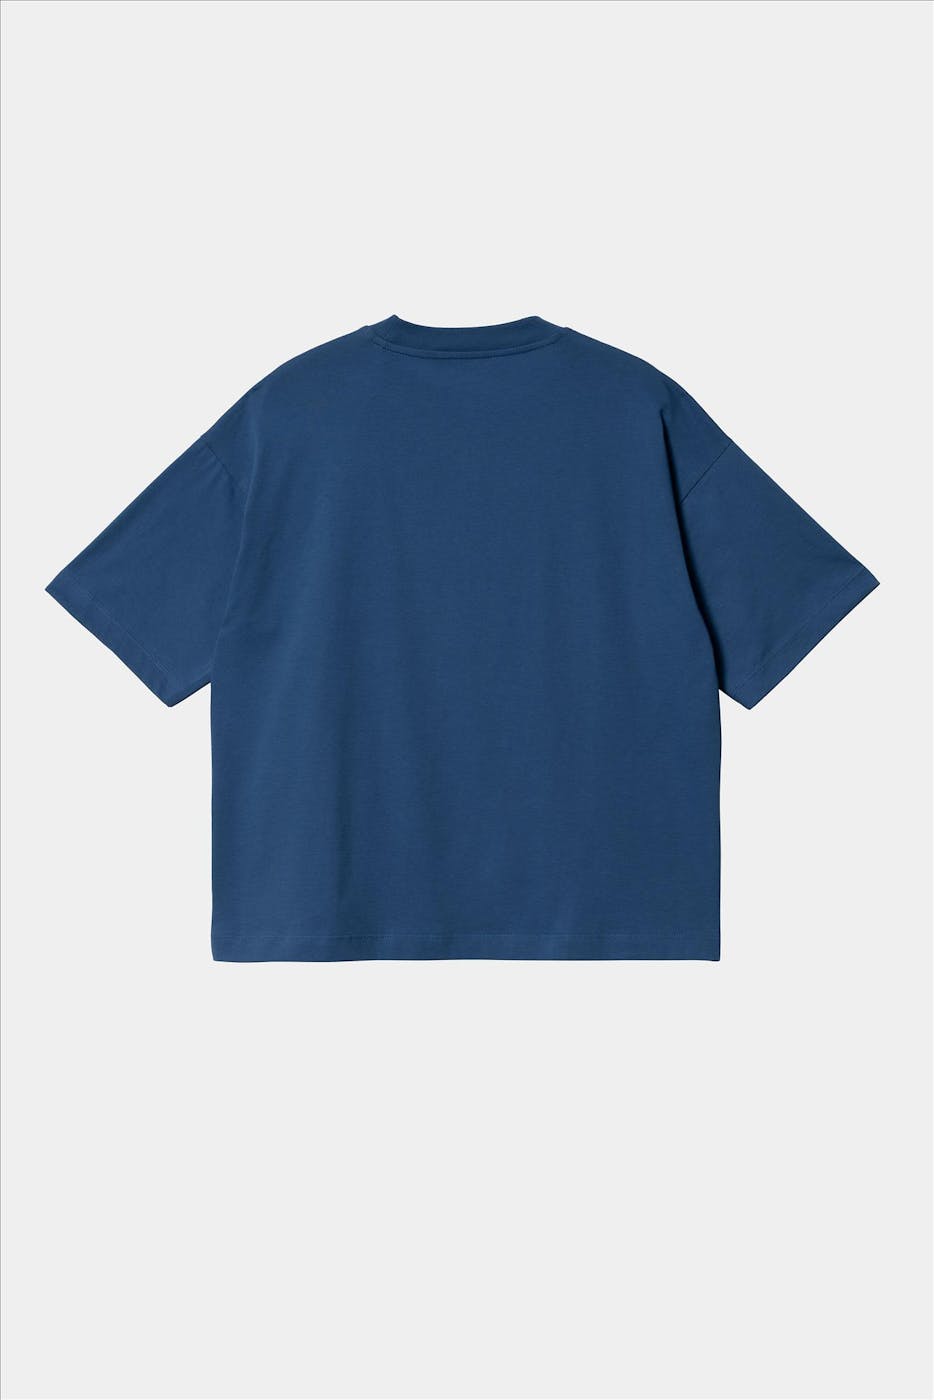 Carhartt WIP - Blauwe Chester T-shirt